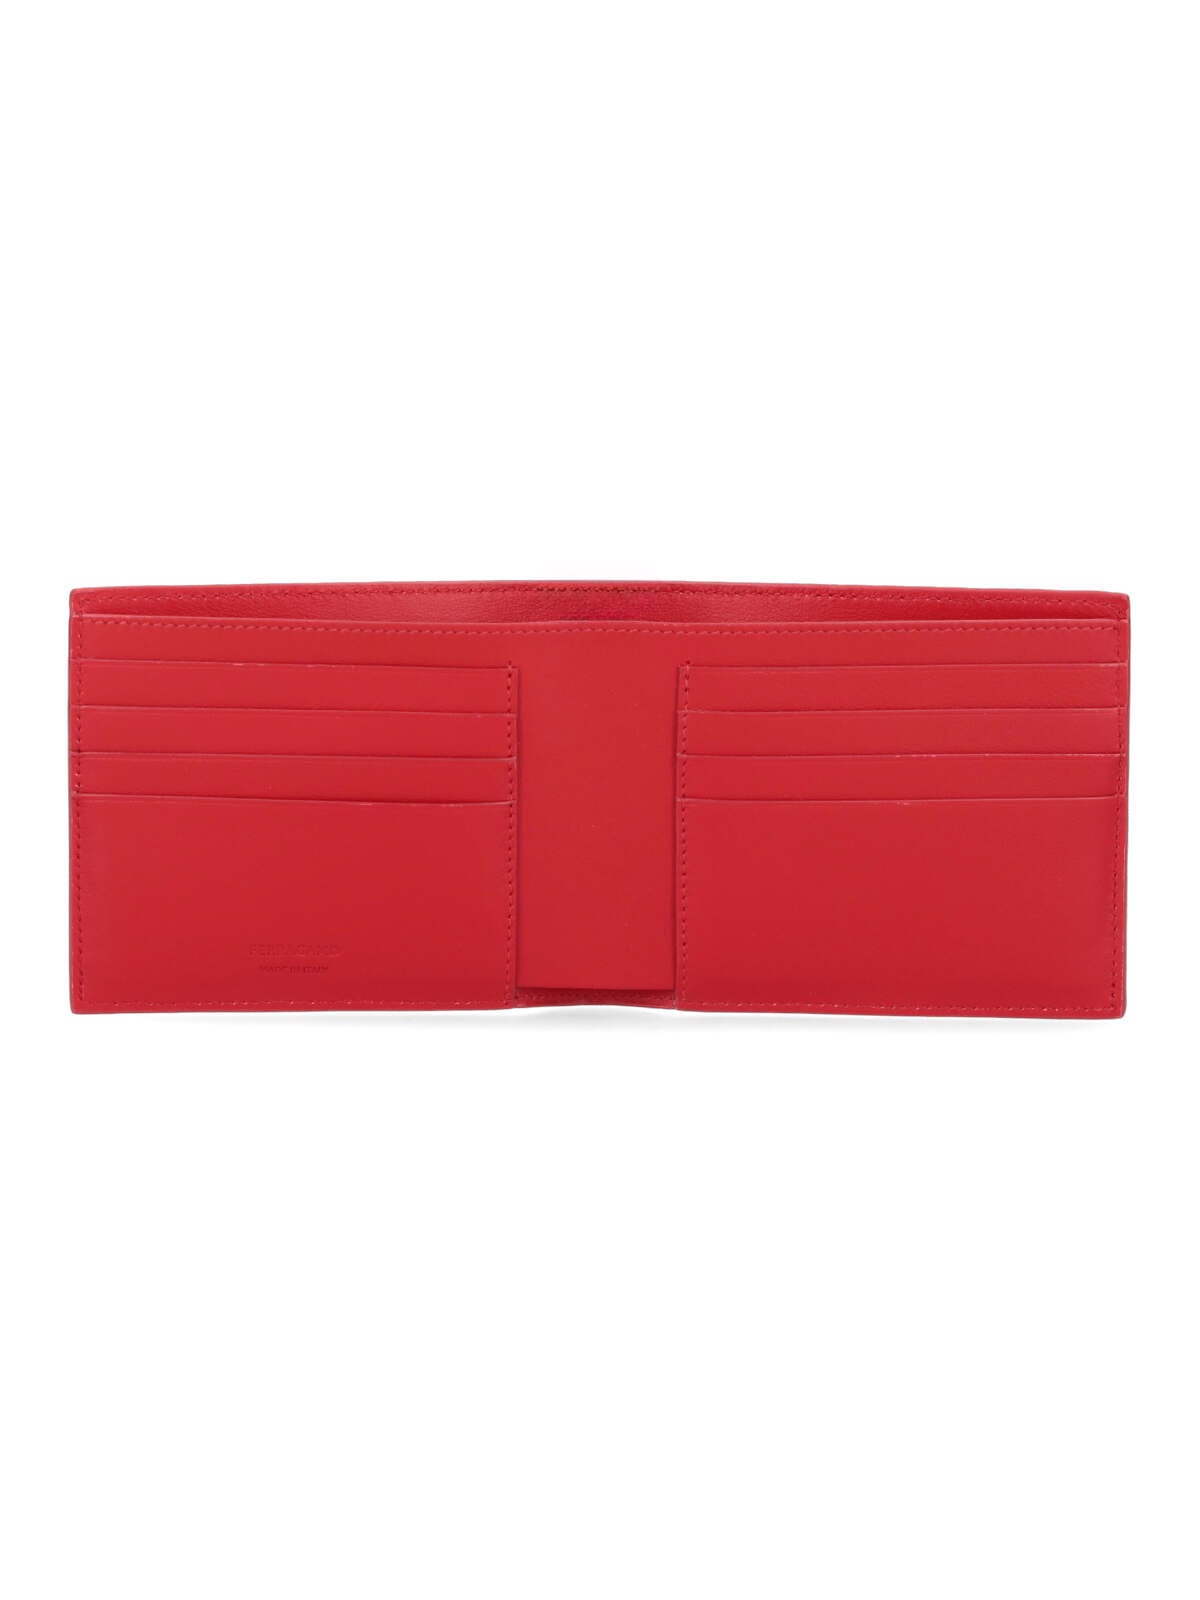 Shop Ferragamo Lizard Wallet In Red